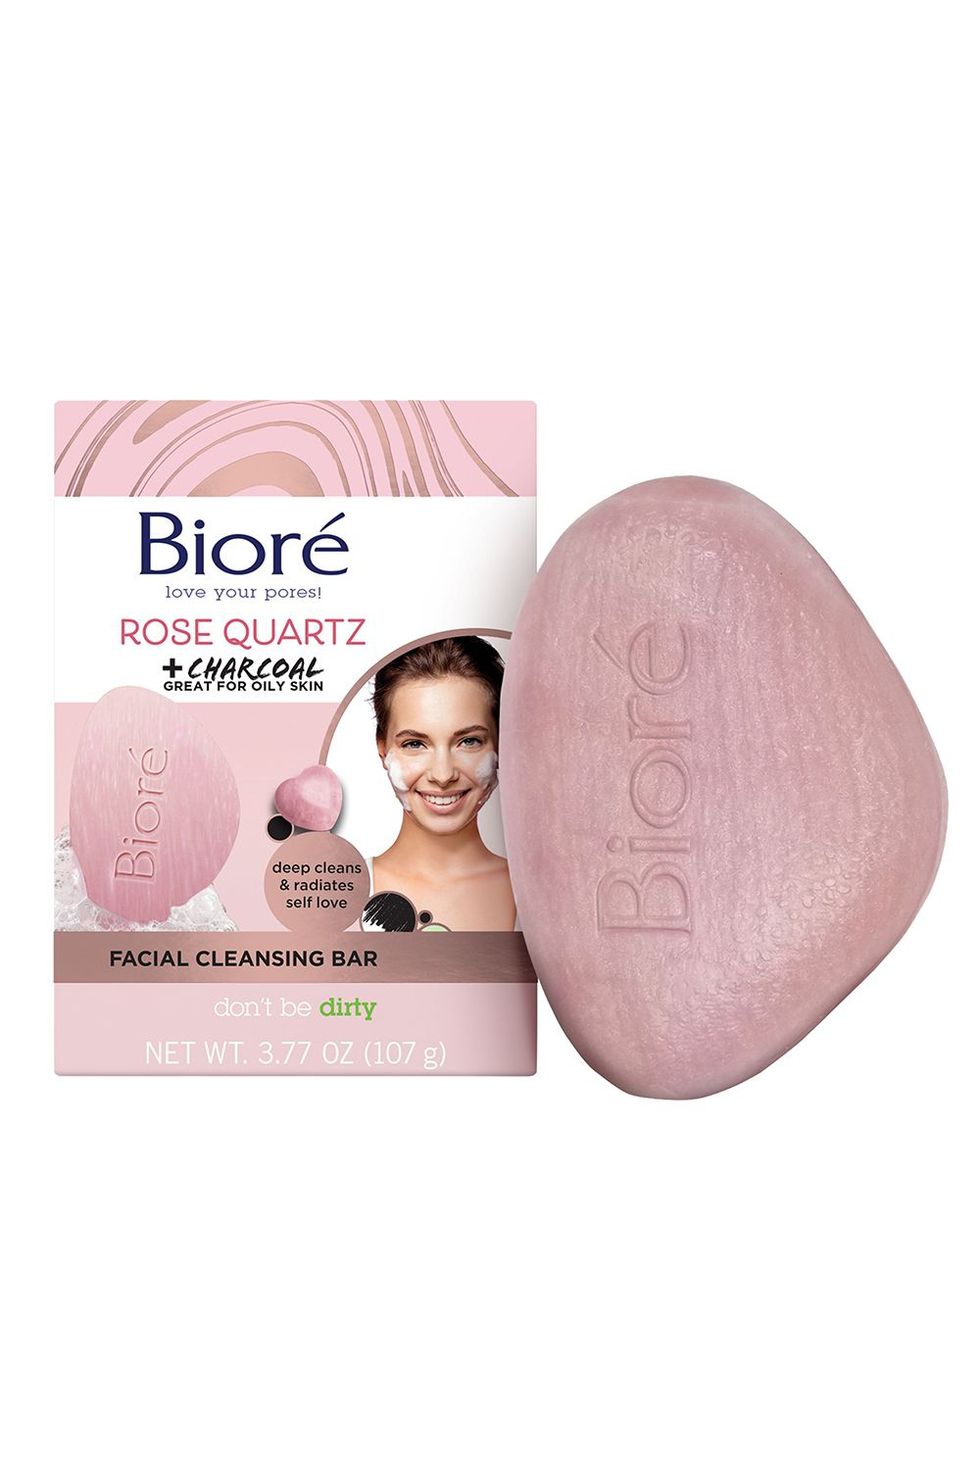 Bioré Rose Quartz With Charcoal Facial Cleansing Bar